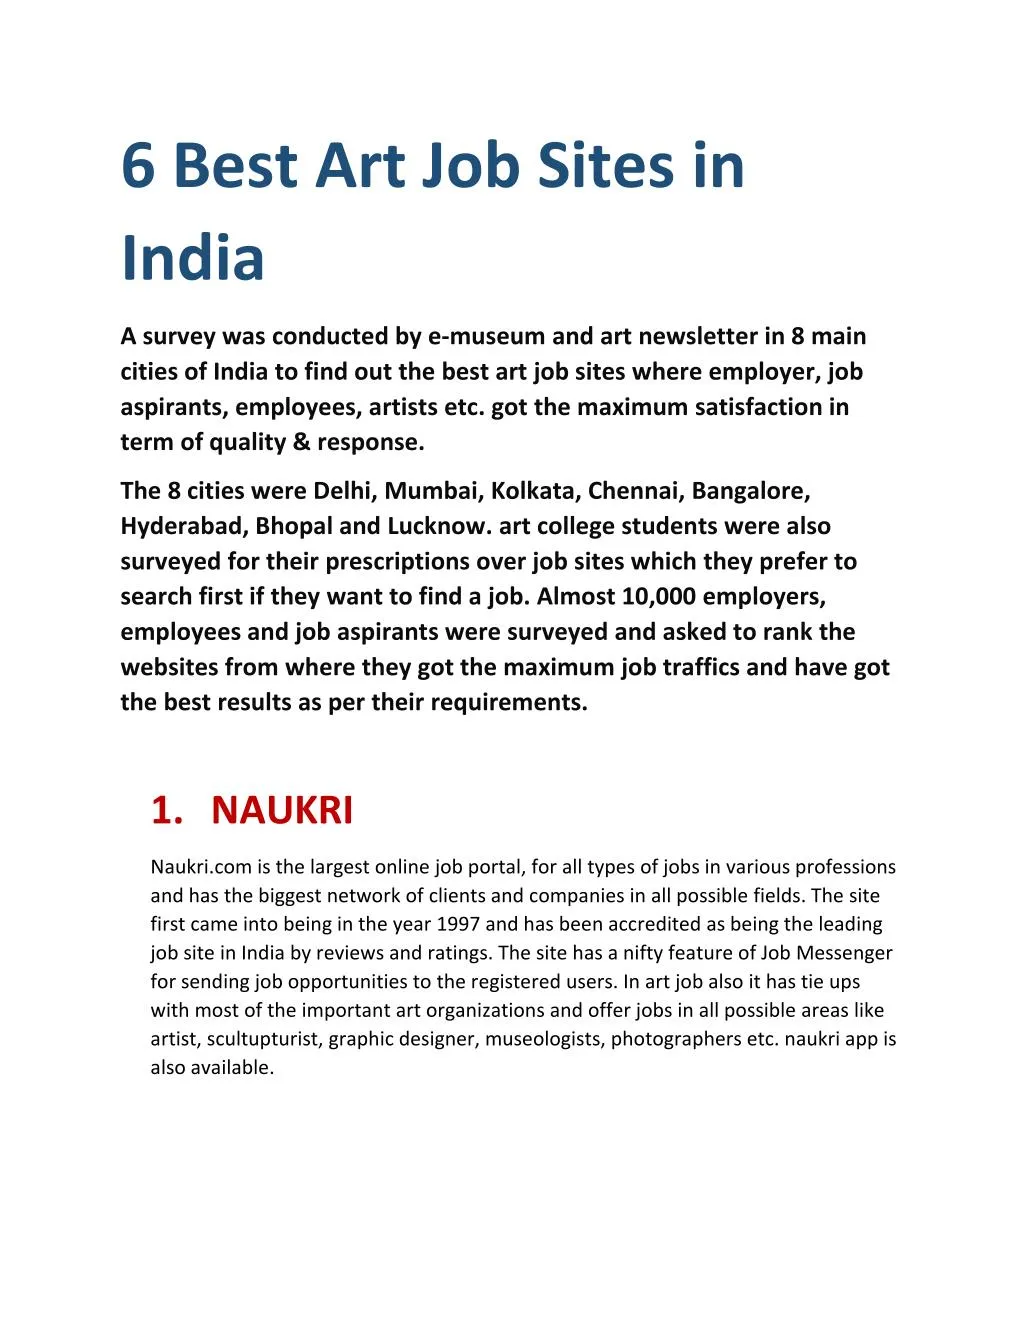 6 best art job sites in india